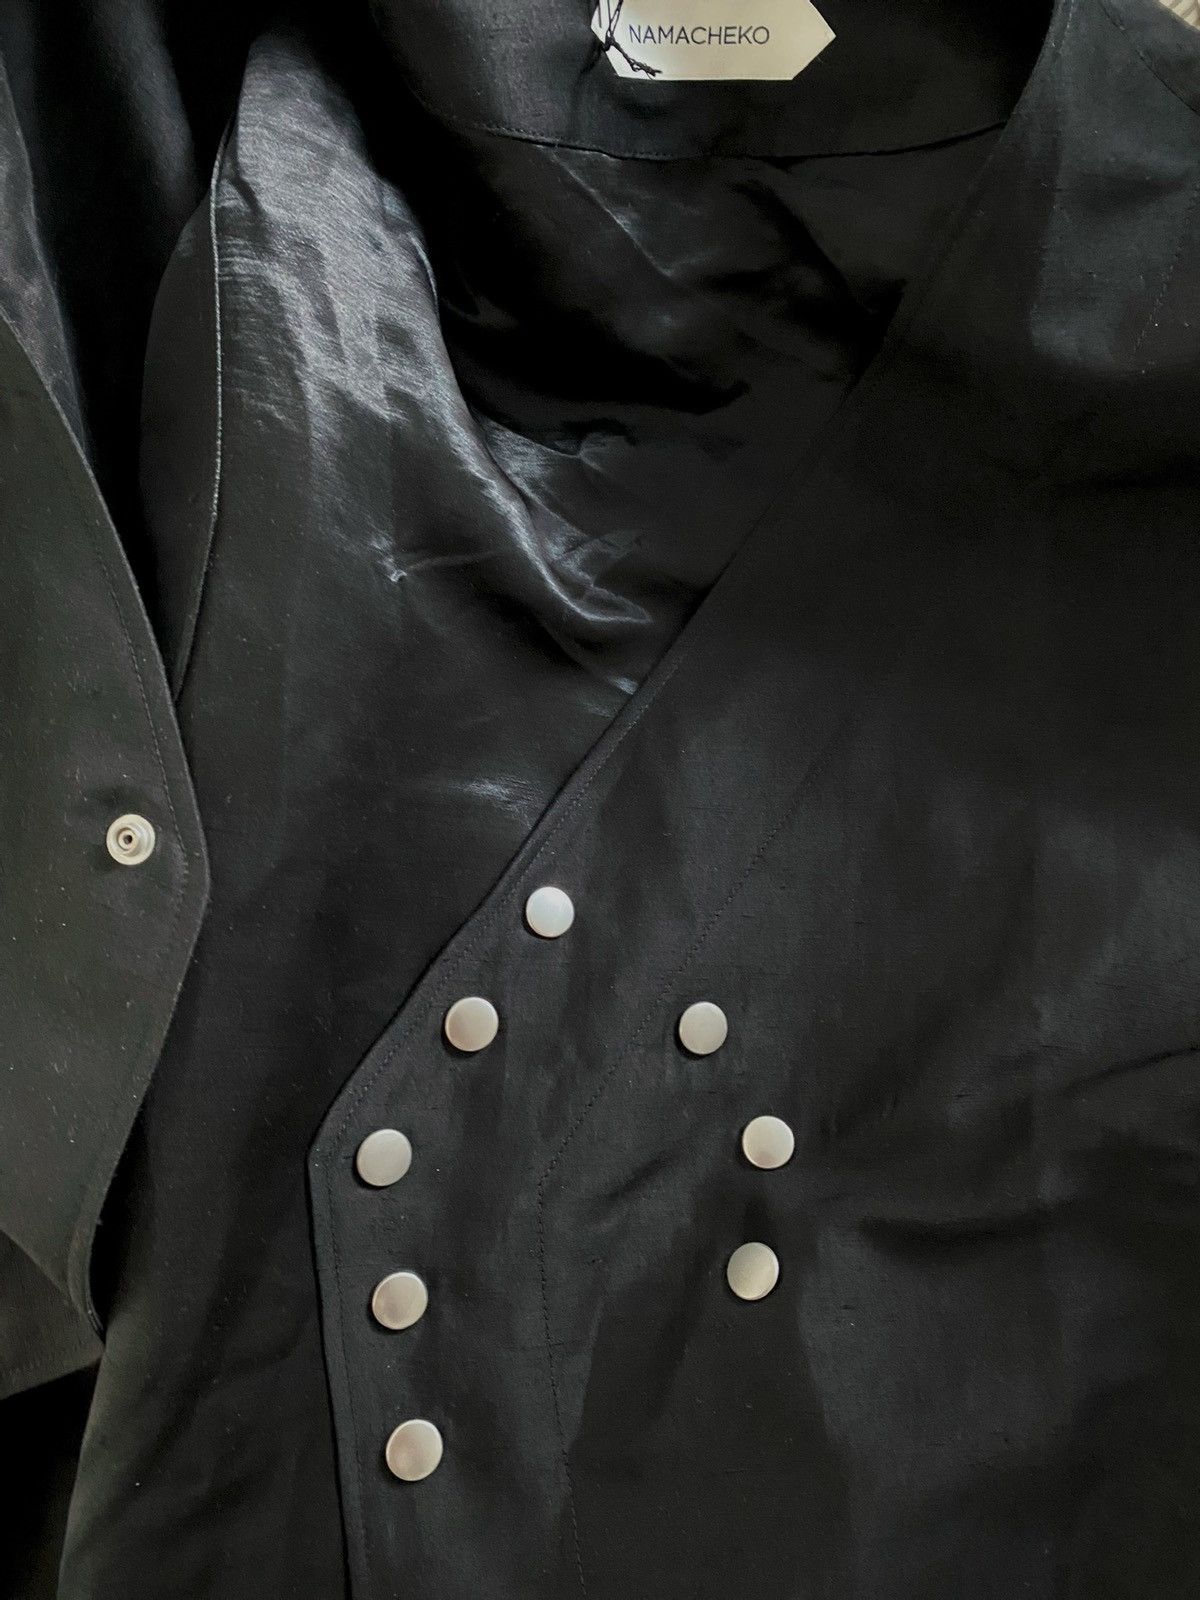 Namacheko Namacheko skaftbladen jacket | Grailed